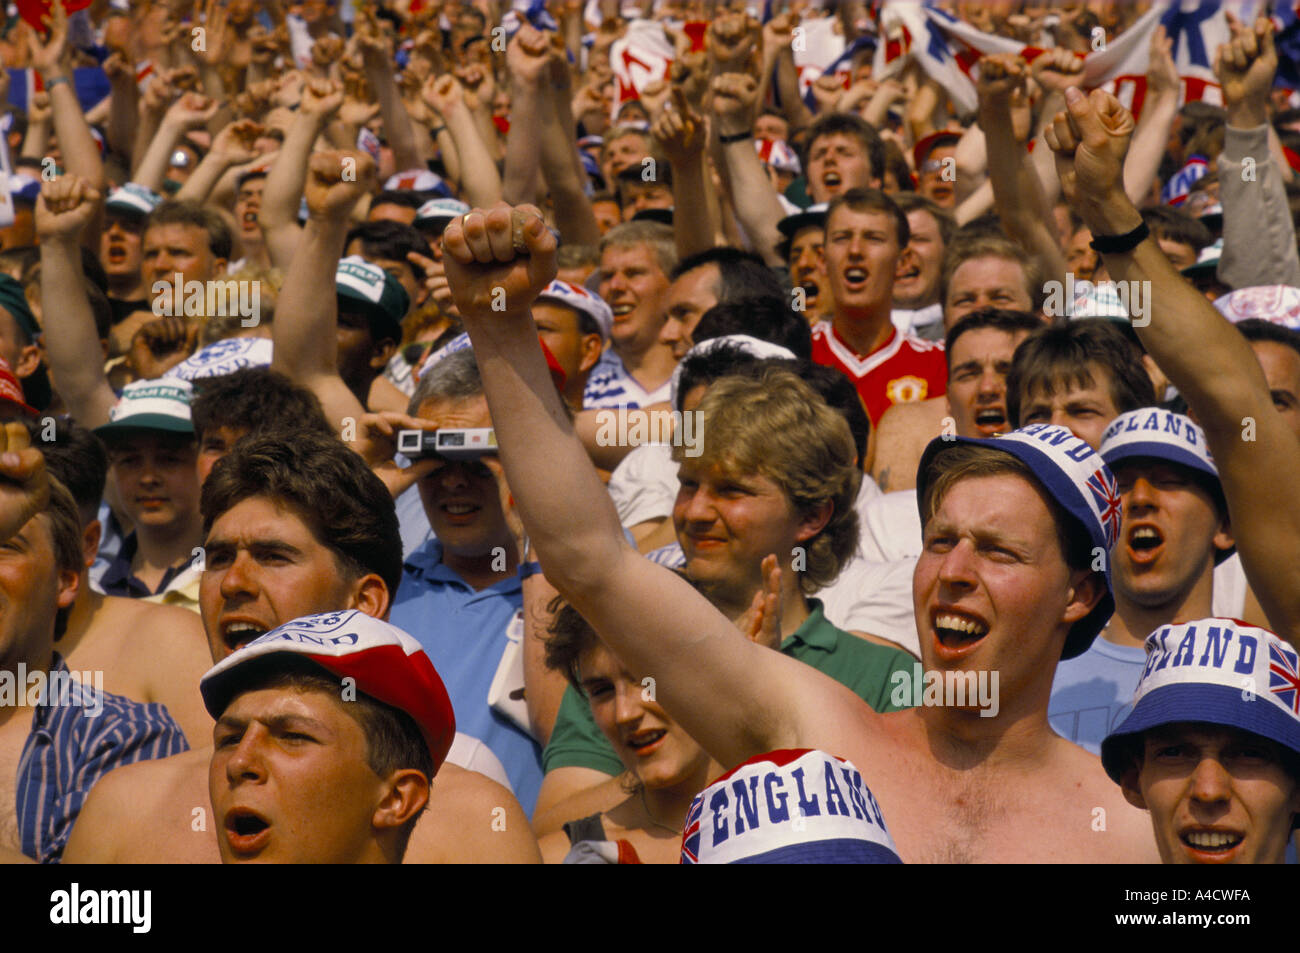 Une foule de fans de football anglais poing levé d'encouragement dans le stade pendant un match de la coupe d'Europe 1988 Banque D'Images